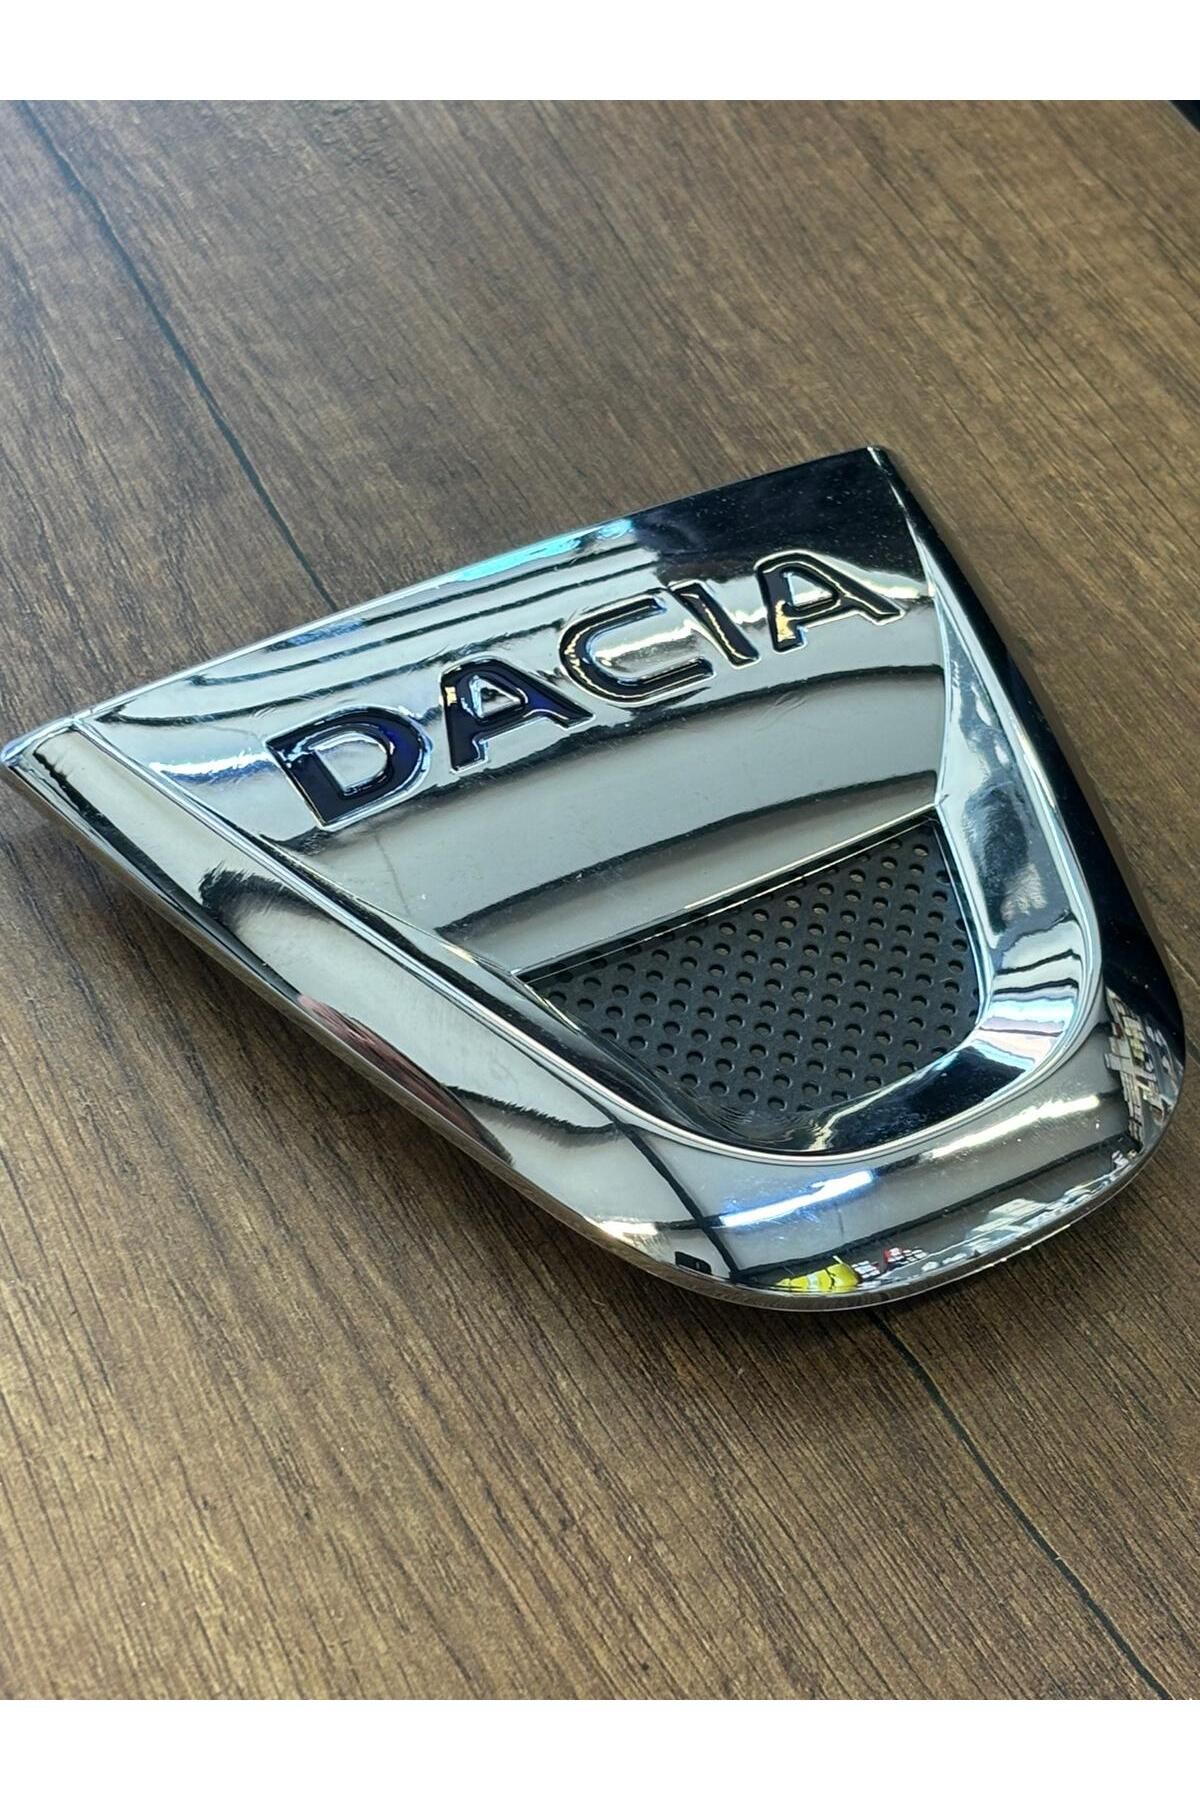 Yerli Dacia Ön Panjur Arması Ön Dacia Logan Yazı Yeri Oyuk 628900520R